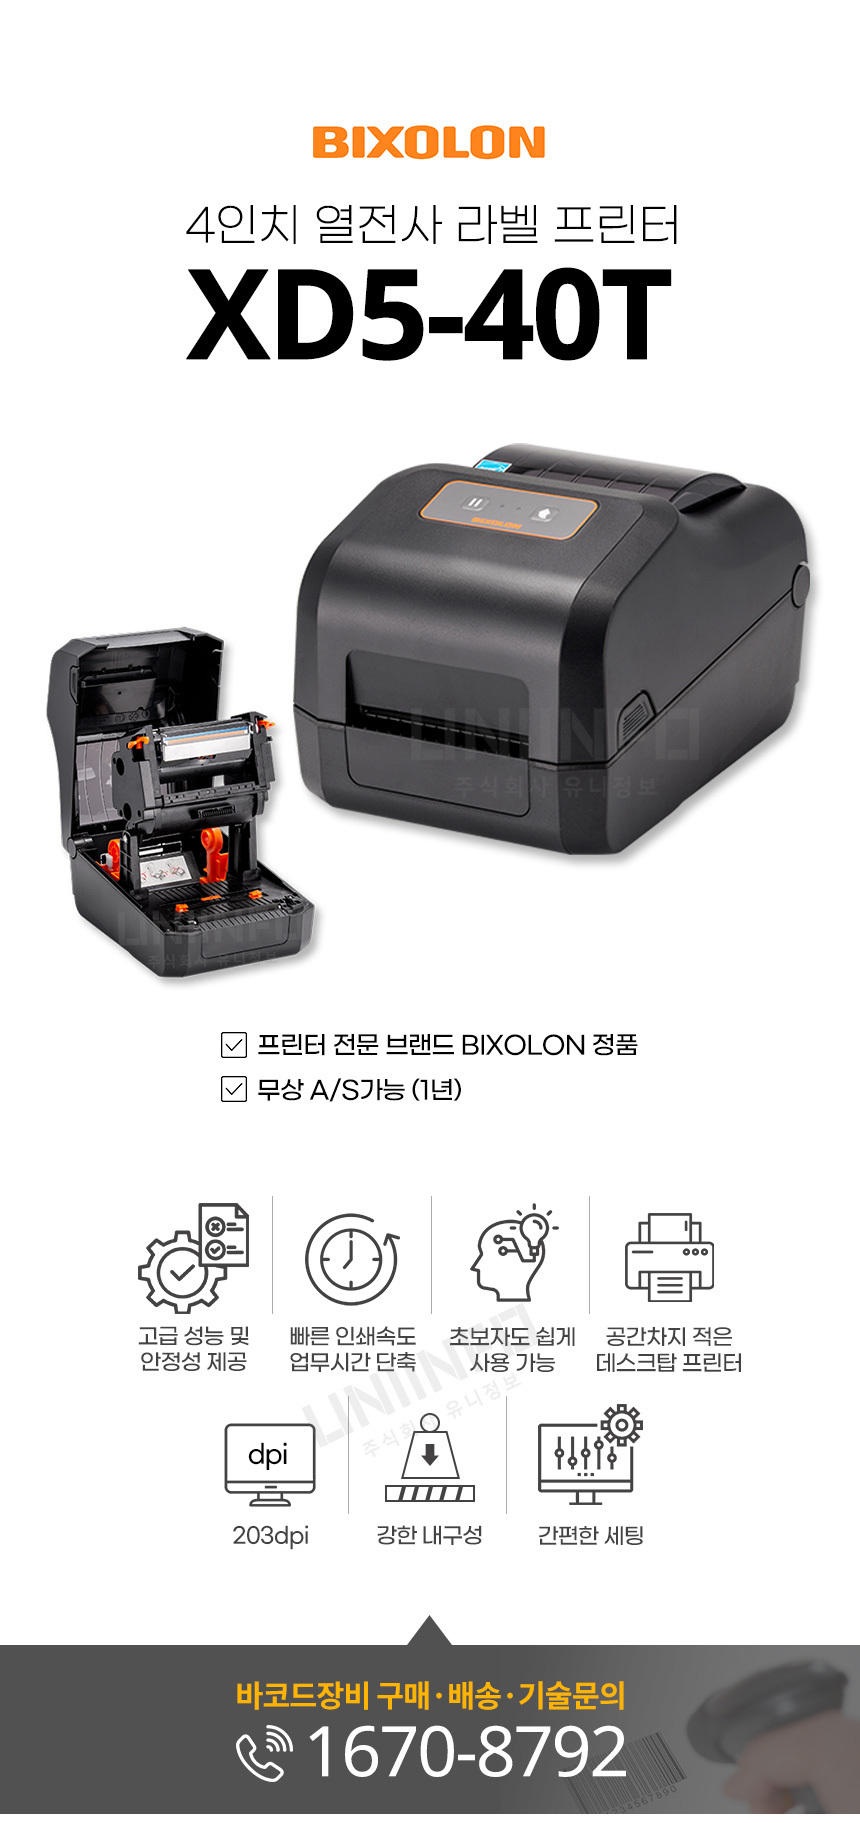 빅솔론 bixolon 4인치 열전사 라벨 프린터 xd5-40t 고성능 안정성 빠른 인쇄속도 데스크탑 프린터 해상도 203dpi